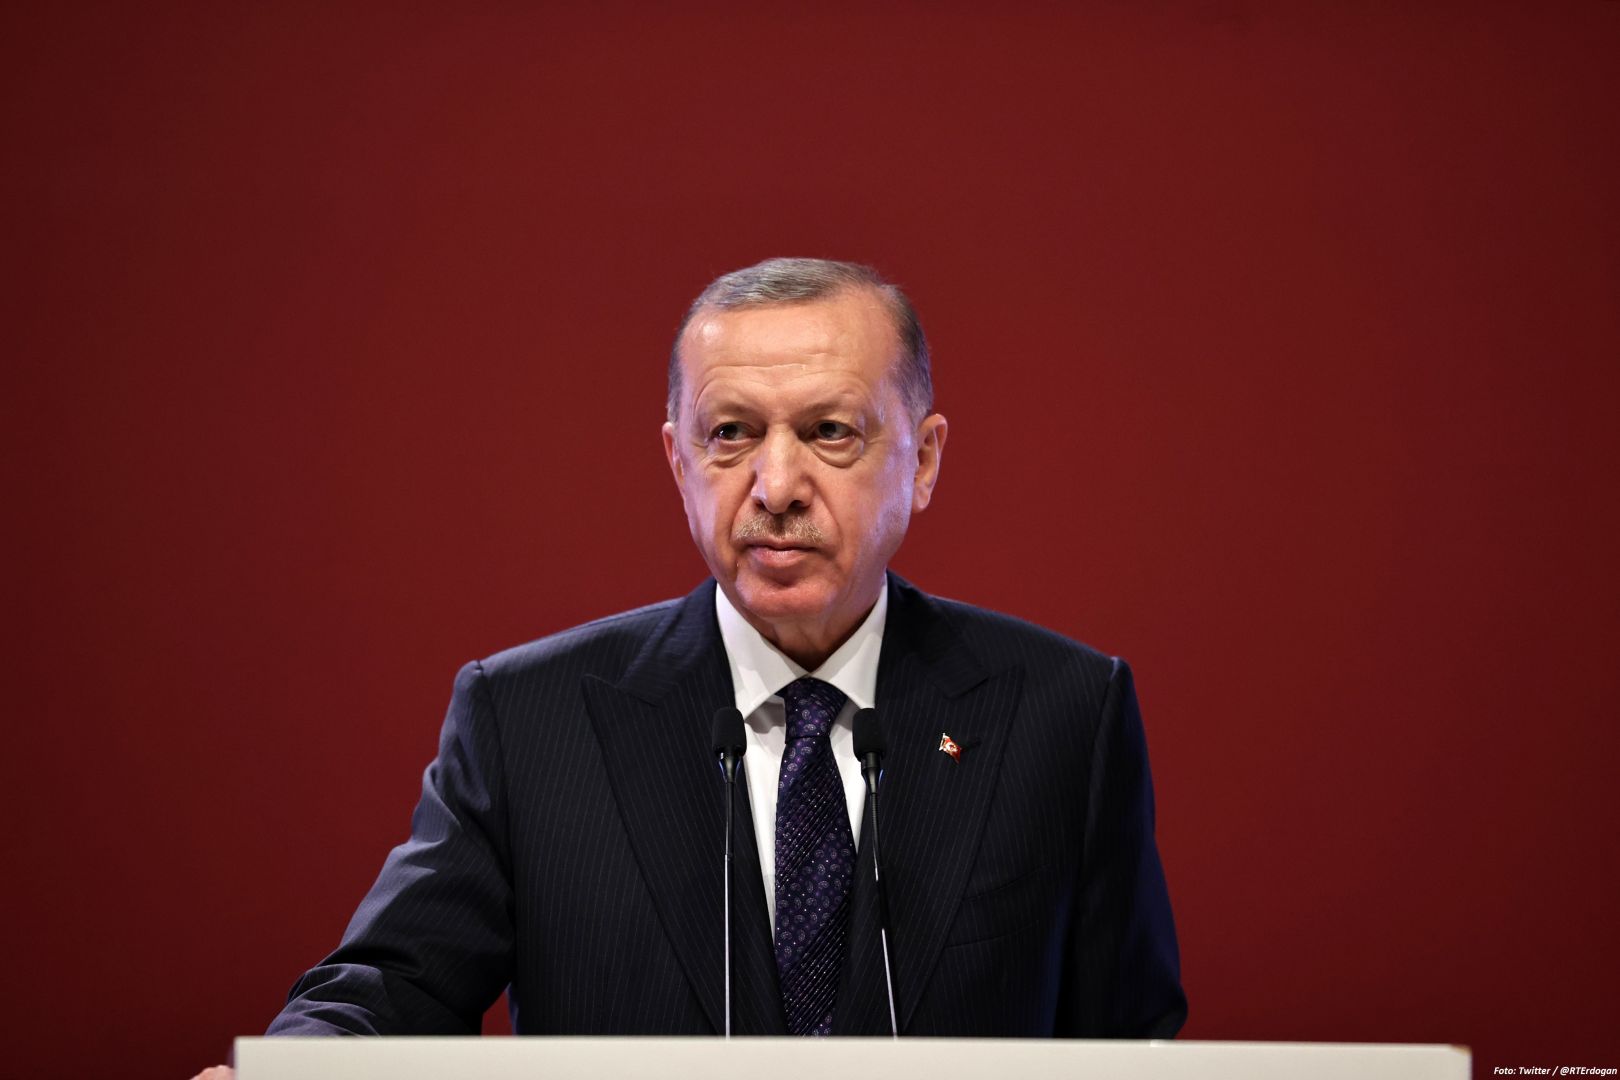 Türkei ist bereit zum Abbau der Spannungen in den Beziehungen zwischen Russland und der Ukraine beizutragen - Erdogan